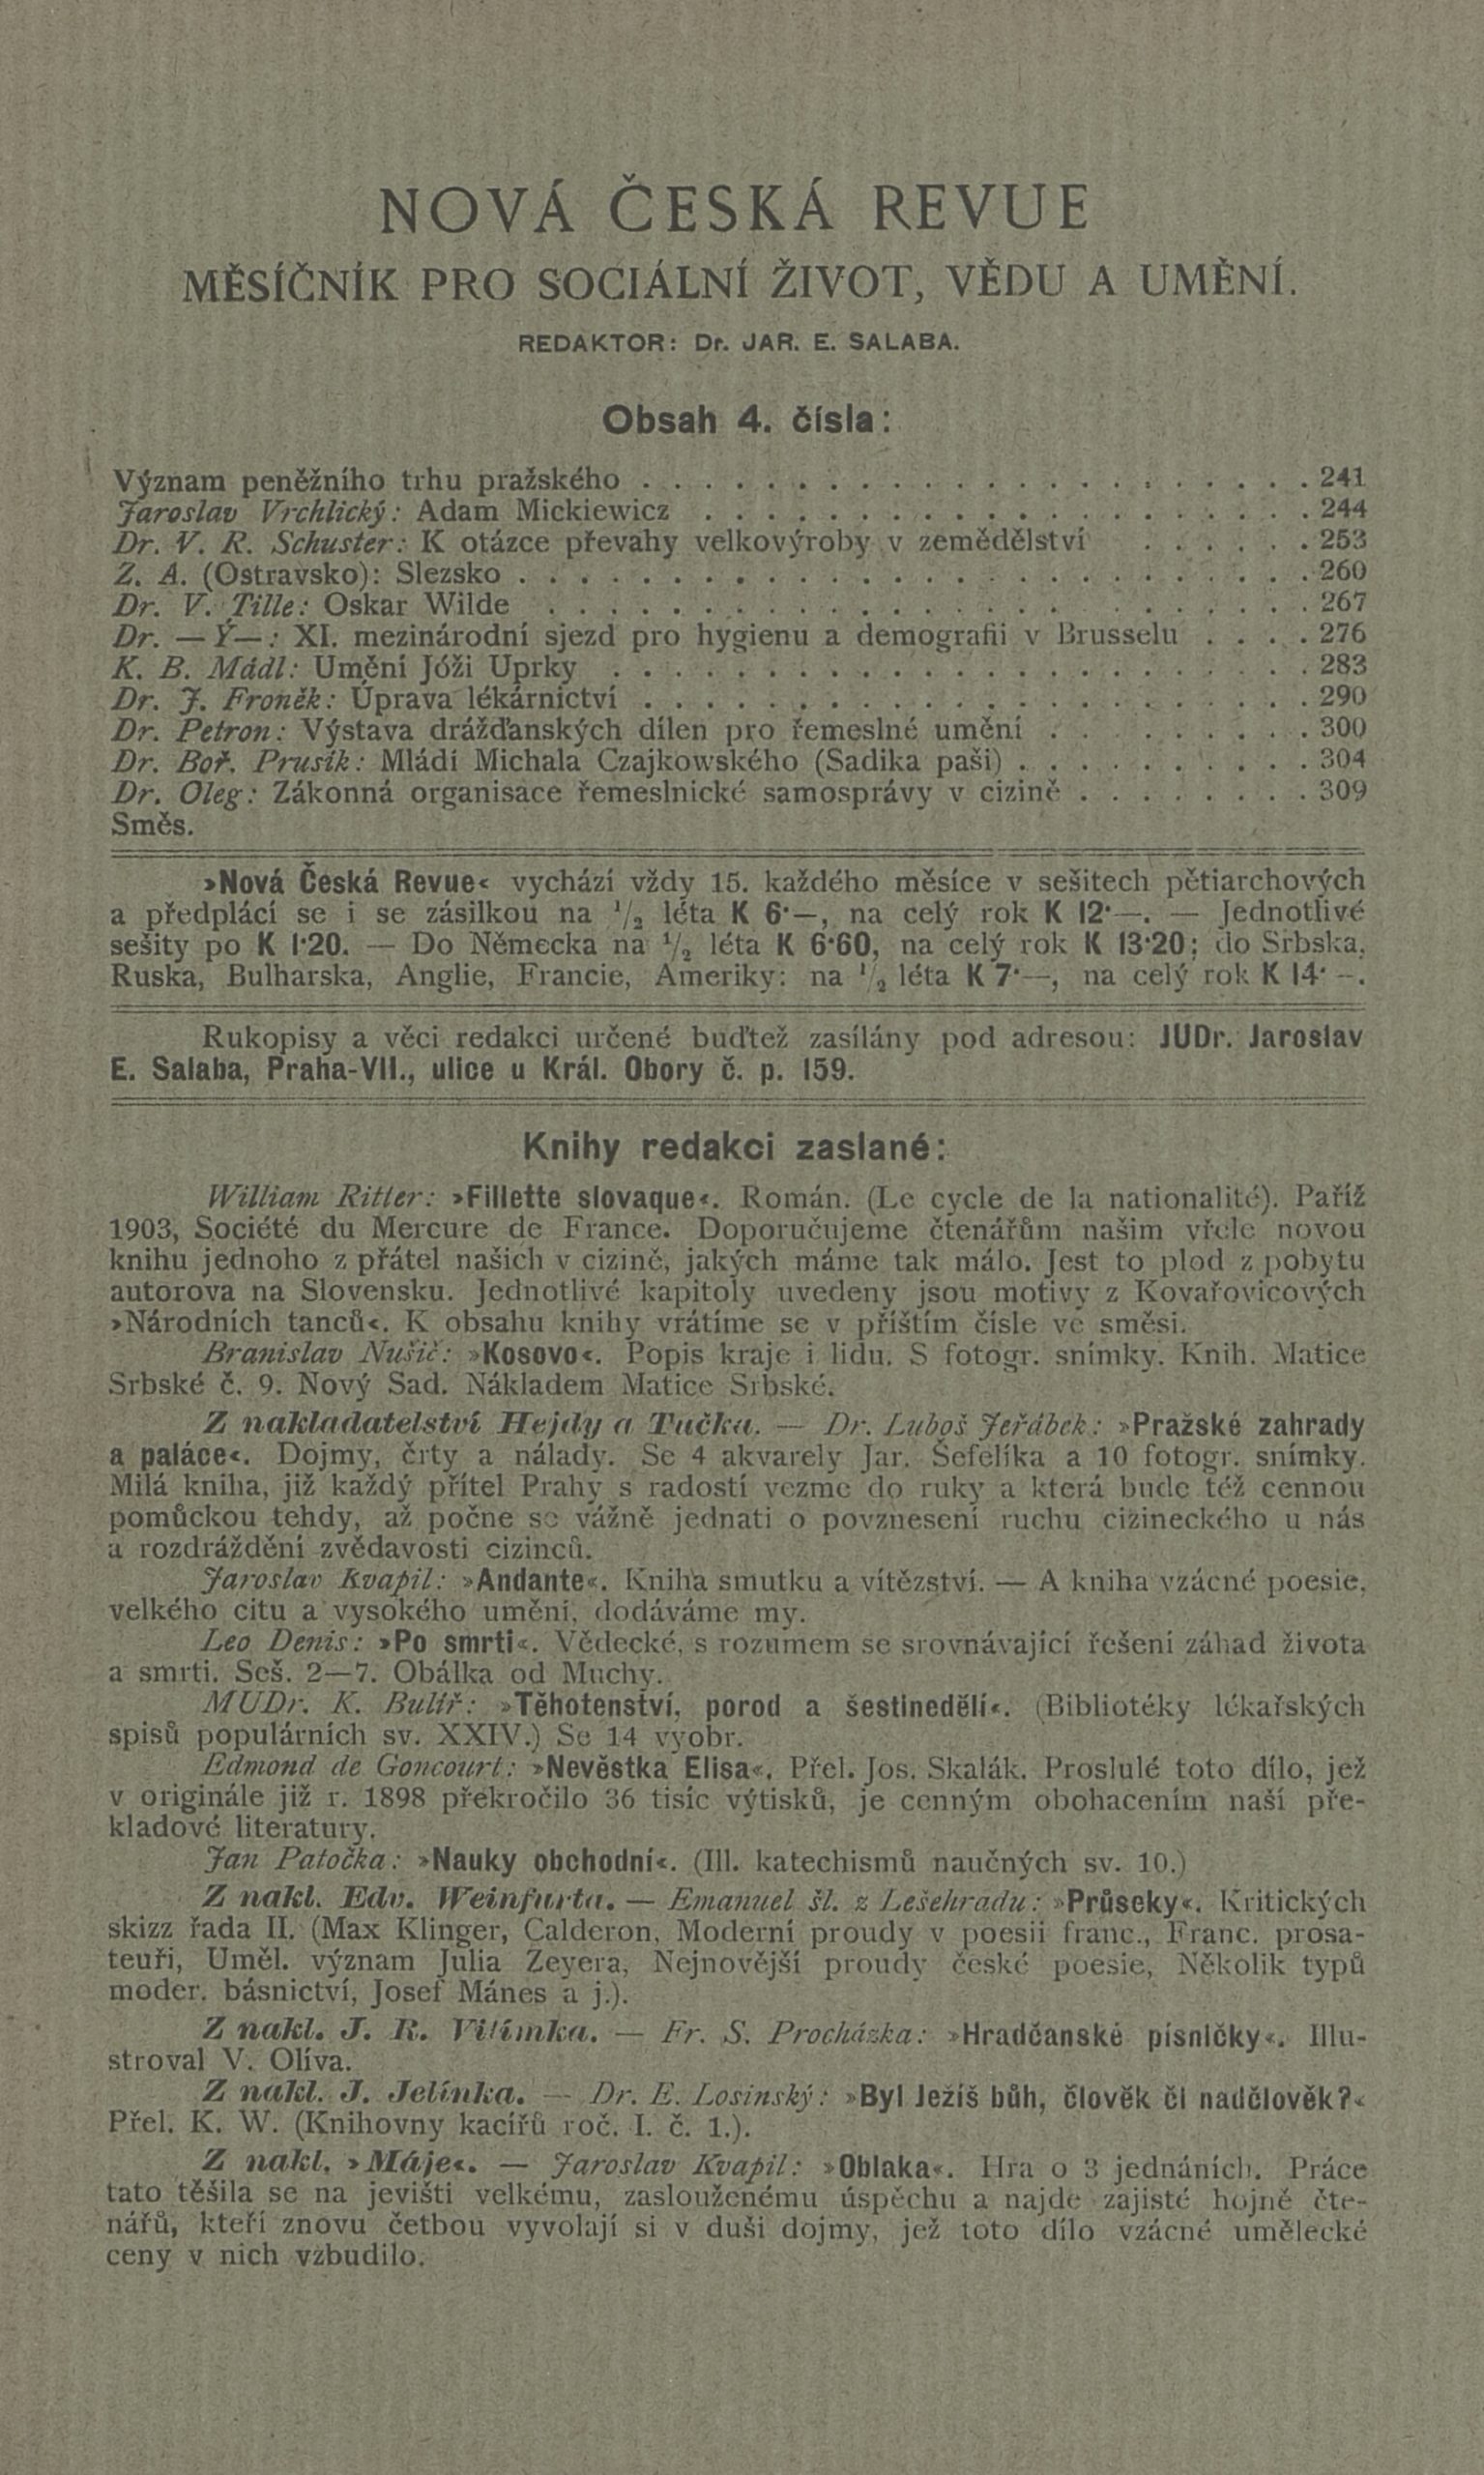 Nova Ceske Review 1904 Cover Editor Vojan Page Listing Vojan as Editor